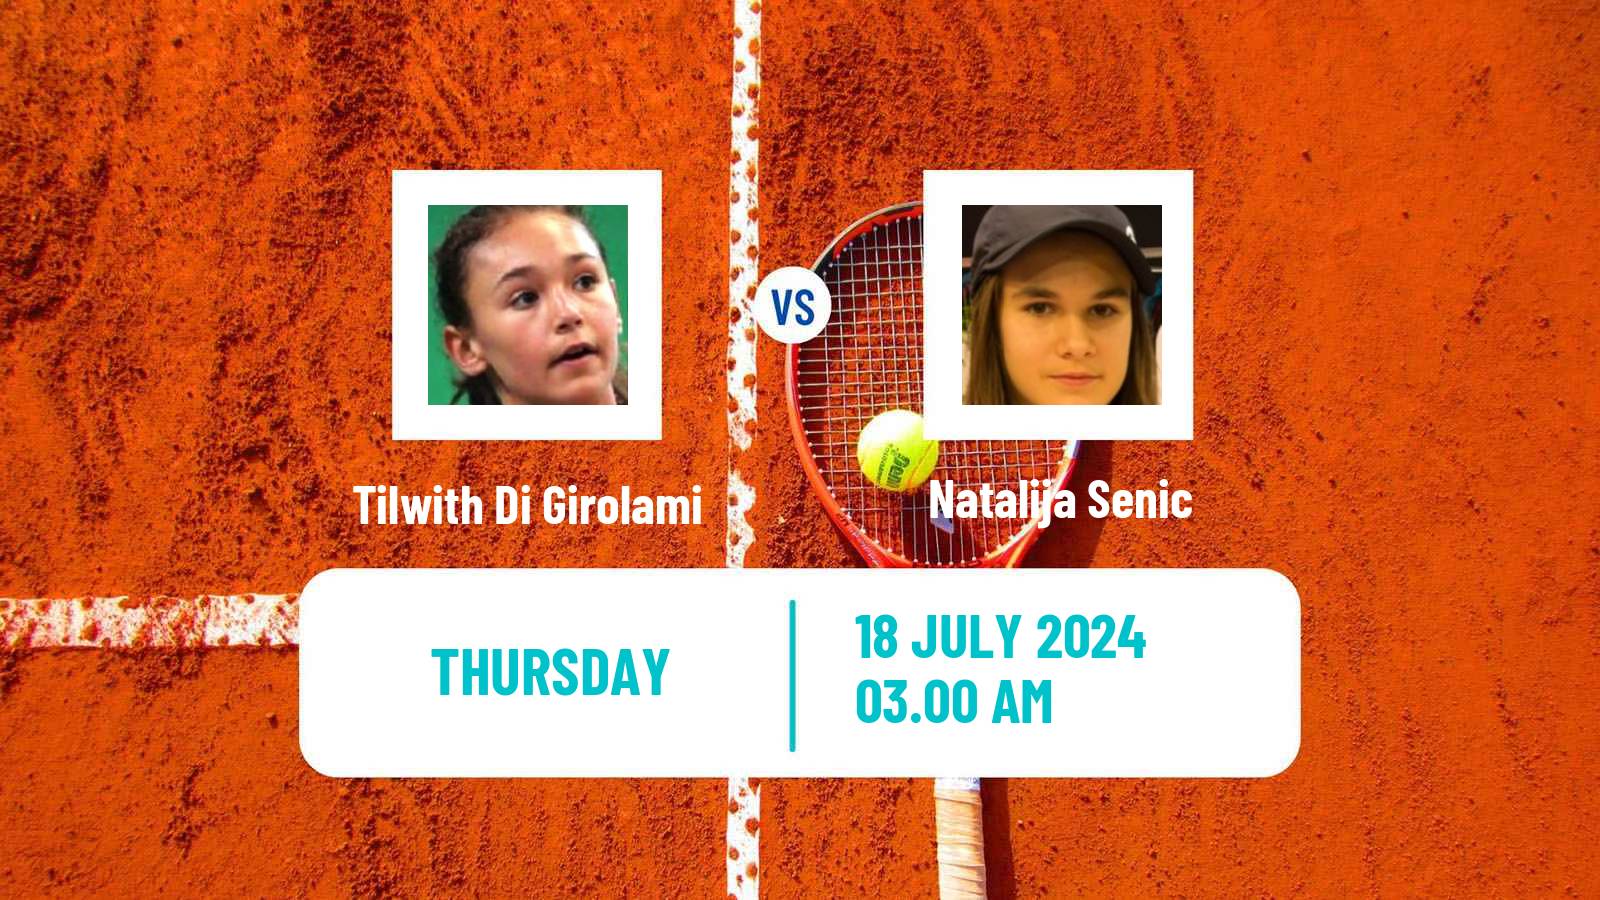 Tennis ITF W15 Kursumlijska Banja 12 Women Tilwith Di Girolami - Natalija Senic